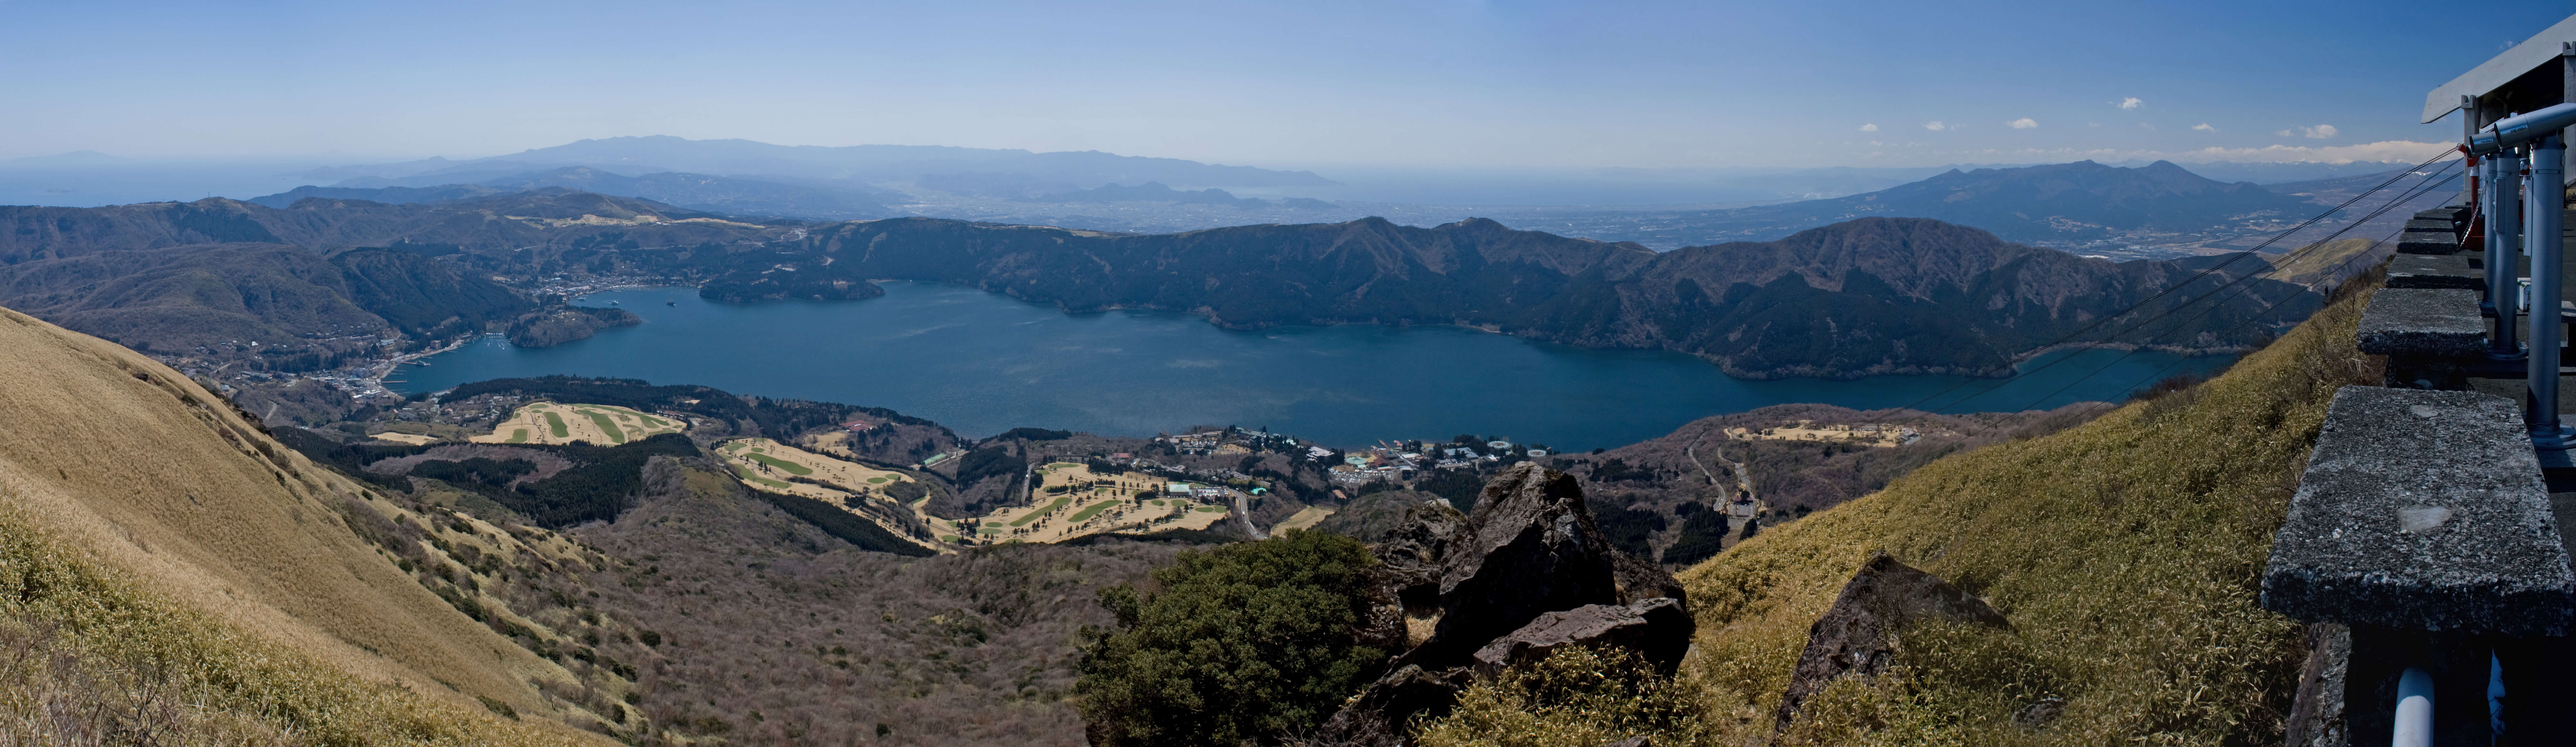 Lake_Ashi_from_Mt.Komagatake_02